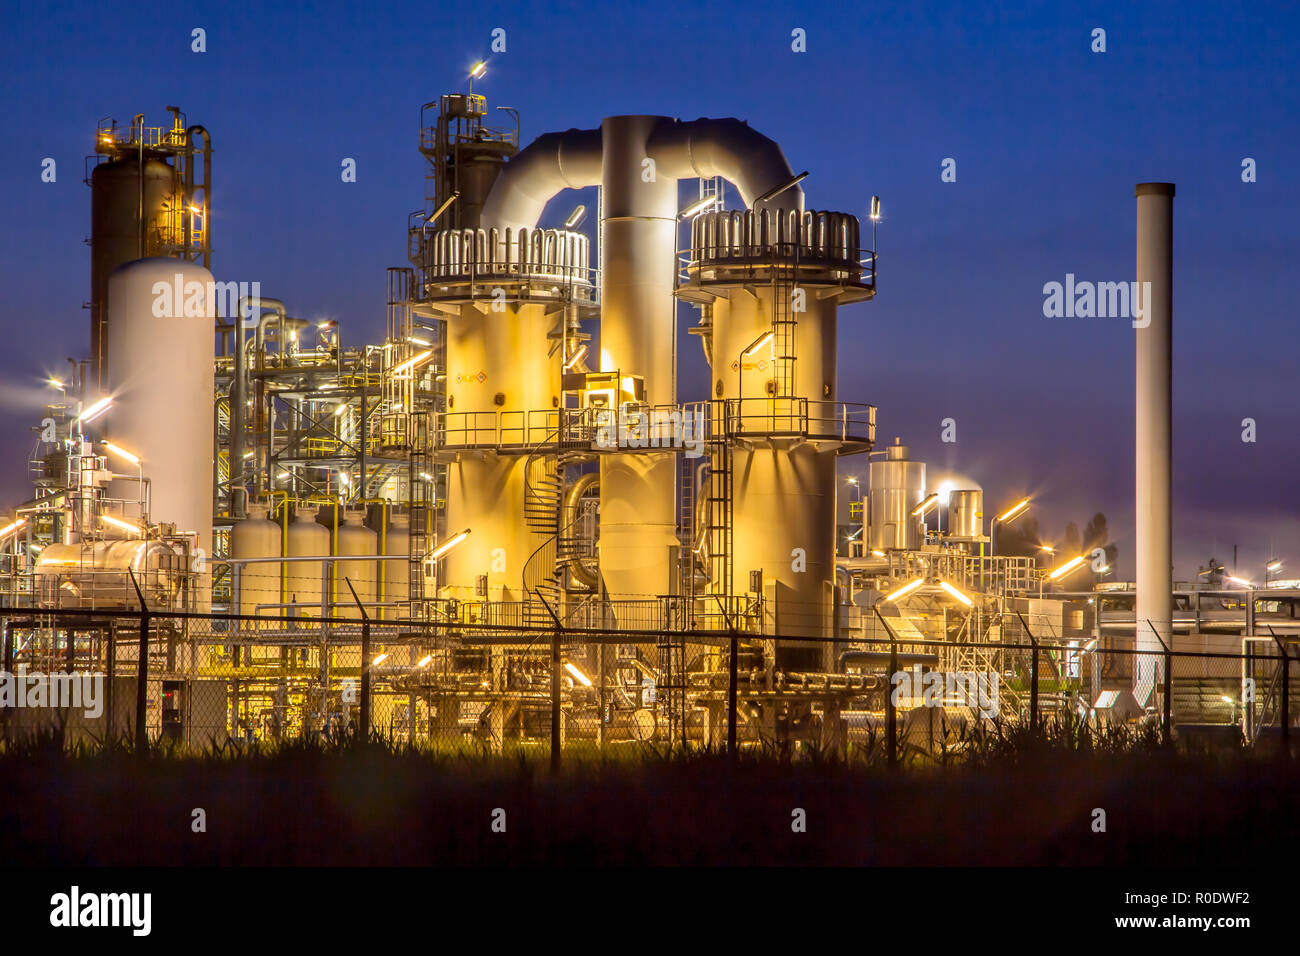 Détail d'une installation industrielle chimique lourde avec mazework de tuyaux dans le crépuscule de scène de nuit Banque D'Images